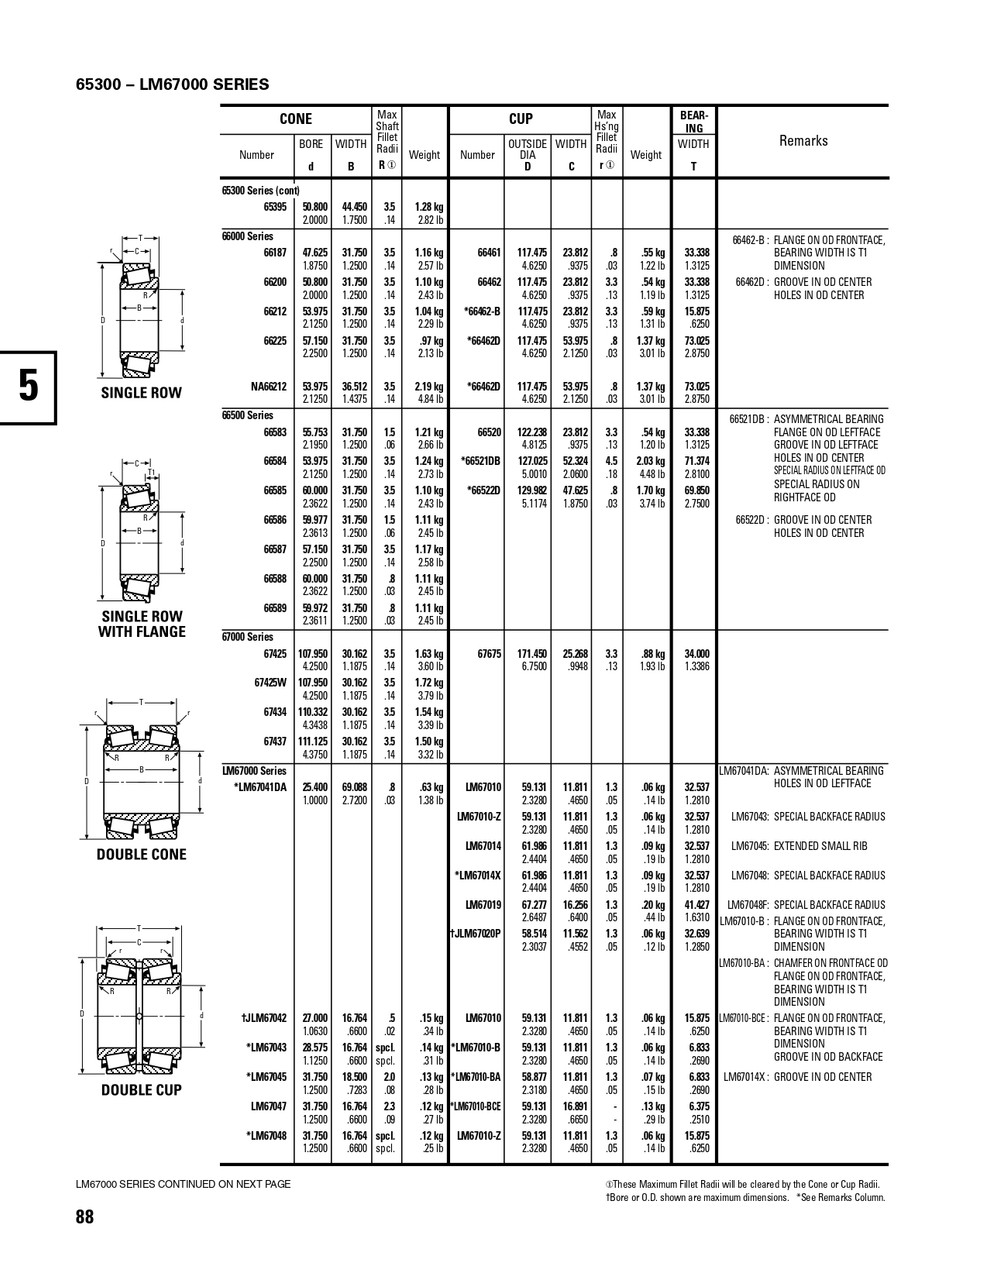 Timken® Single Row Cone - Precision Class  66585-2